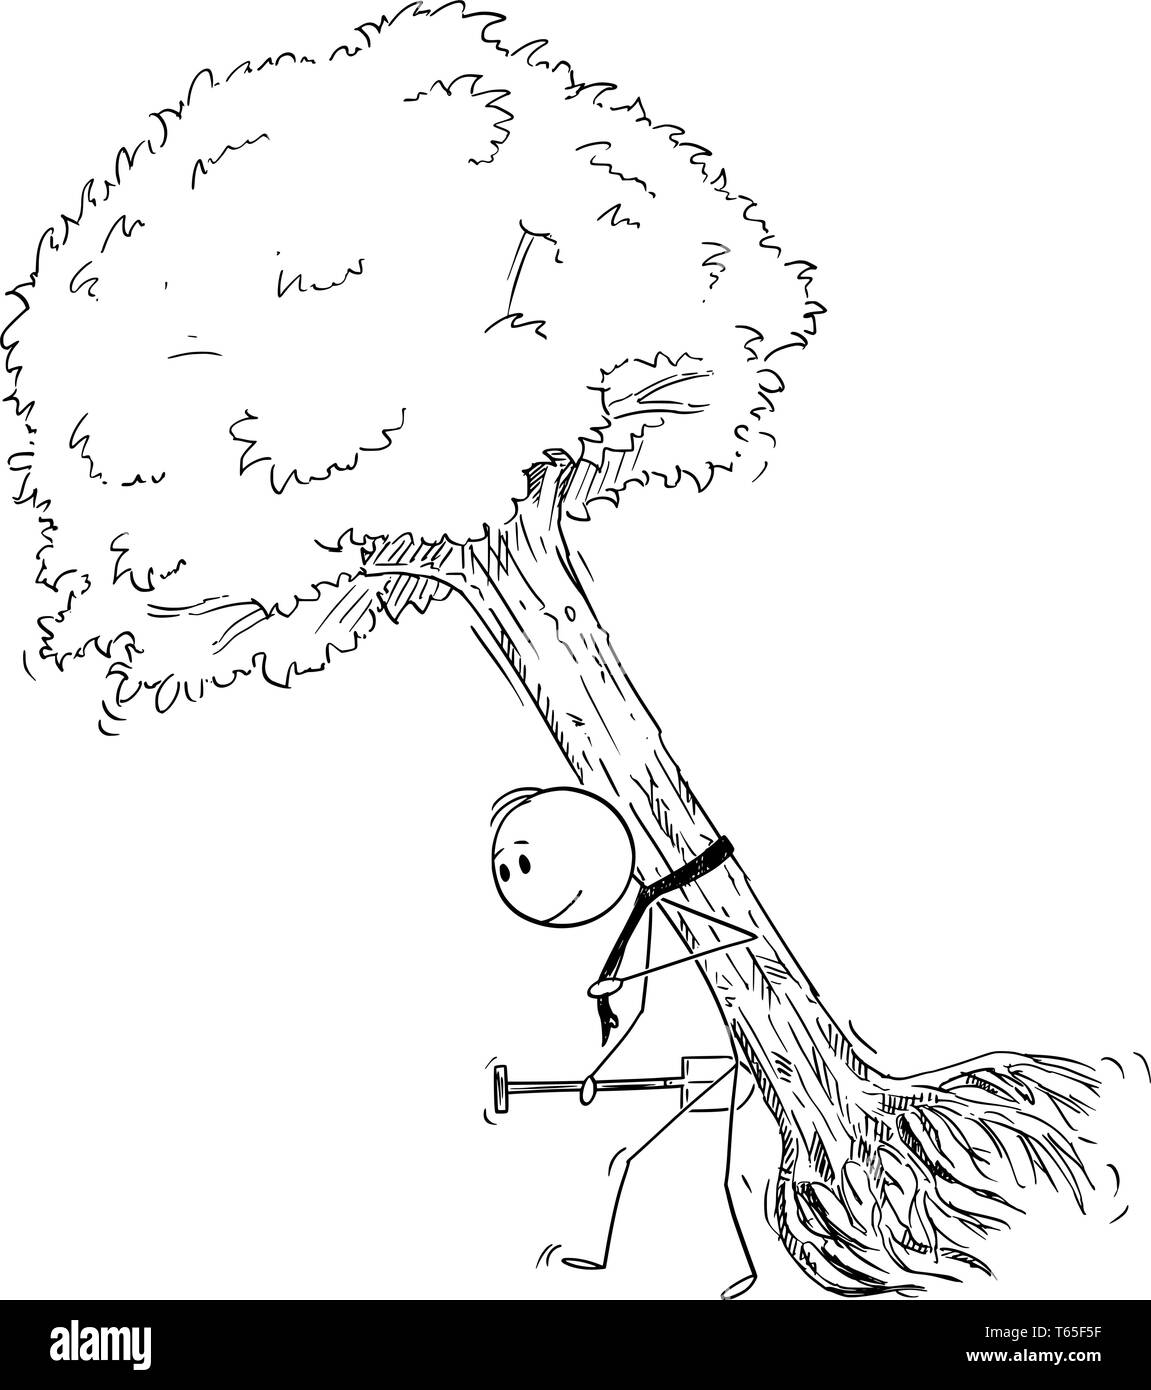 Cartoon Strichmannchen Zeichnen Konzeptionelle Darstellung Der Mann Der Grosse Baum Zu Pflanzen Natur Okologie Und Umwelt Konzept Stock Vektorgrafik Alamy